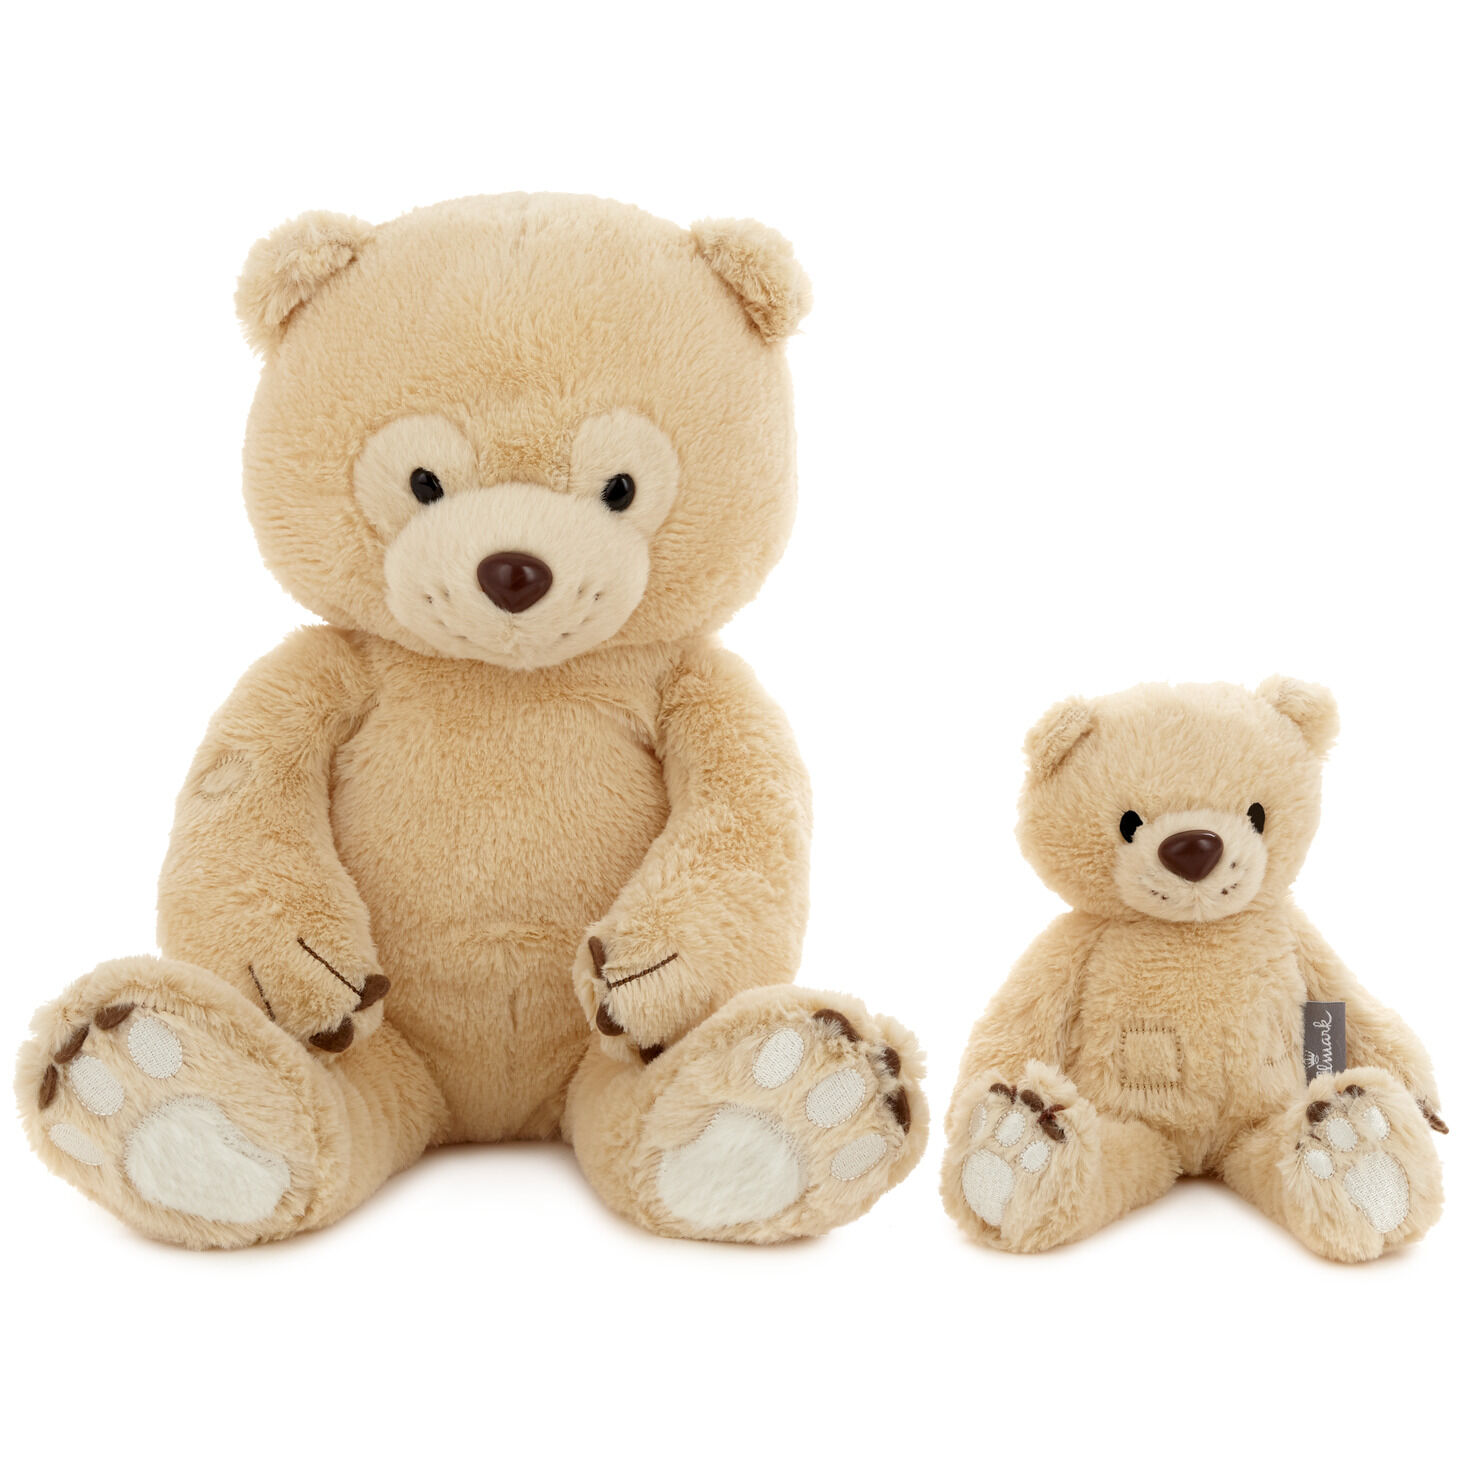 little stuffed teddy bears